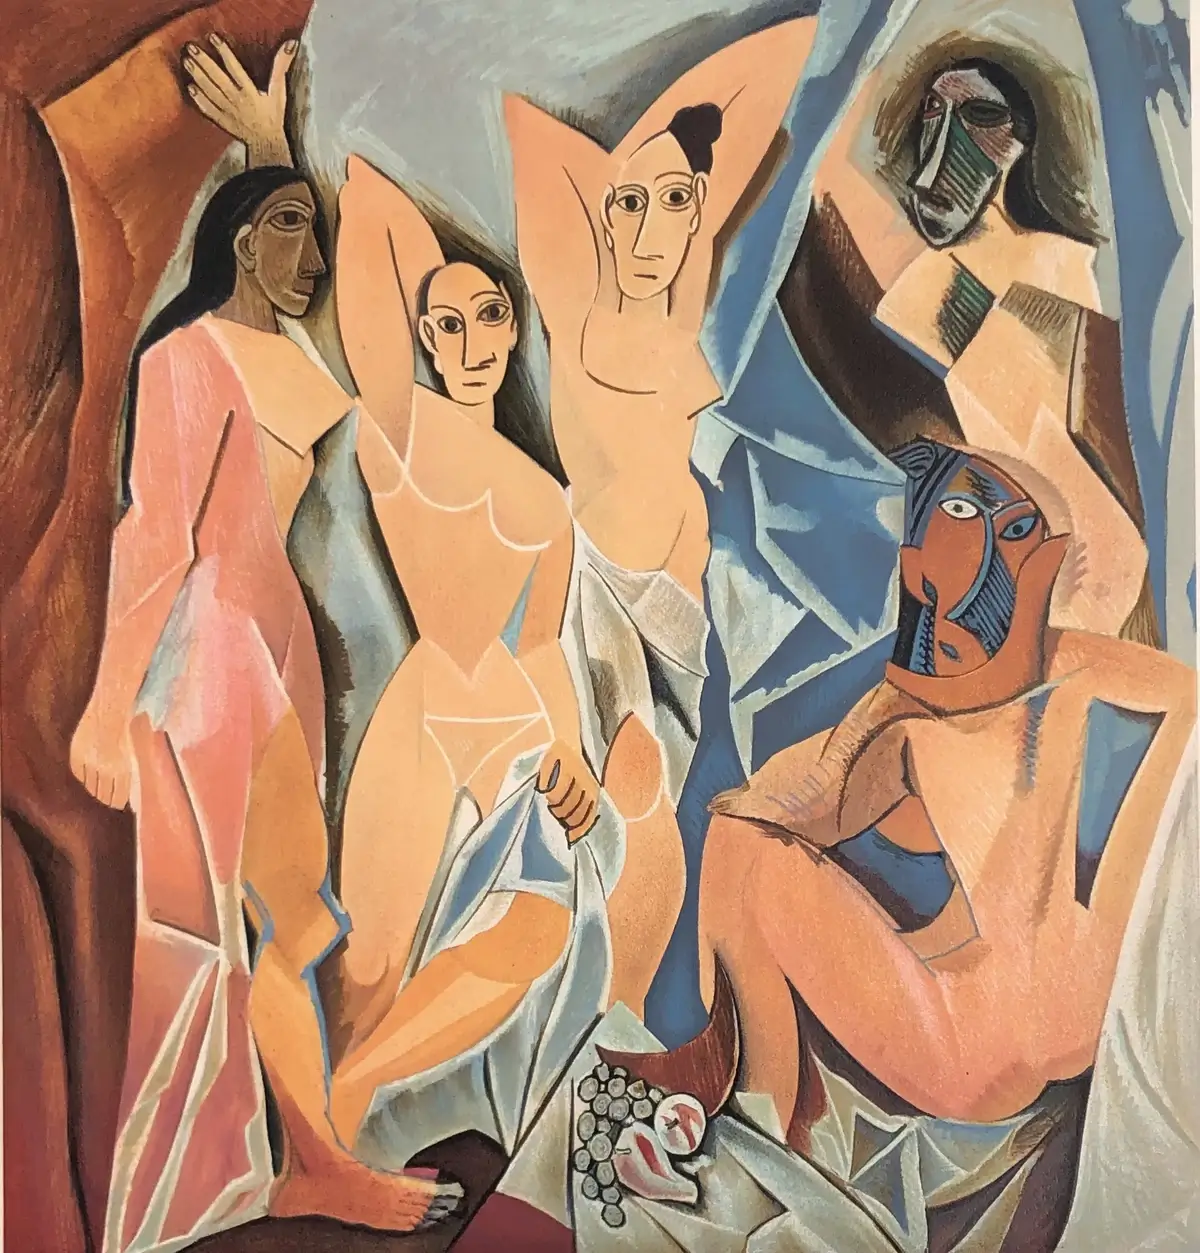 "Les Demoiselles d'Avignon" by Picasso, exemplifying Cubist style